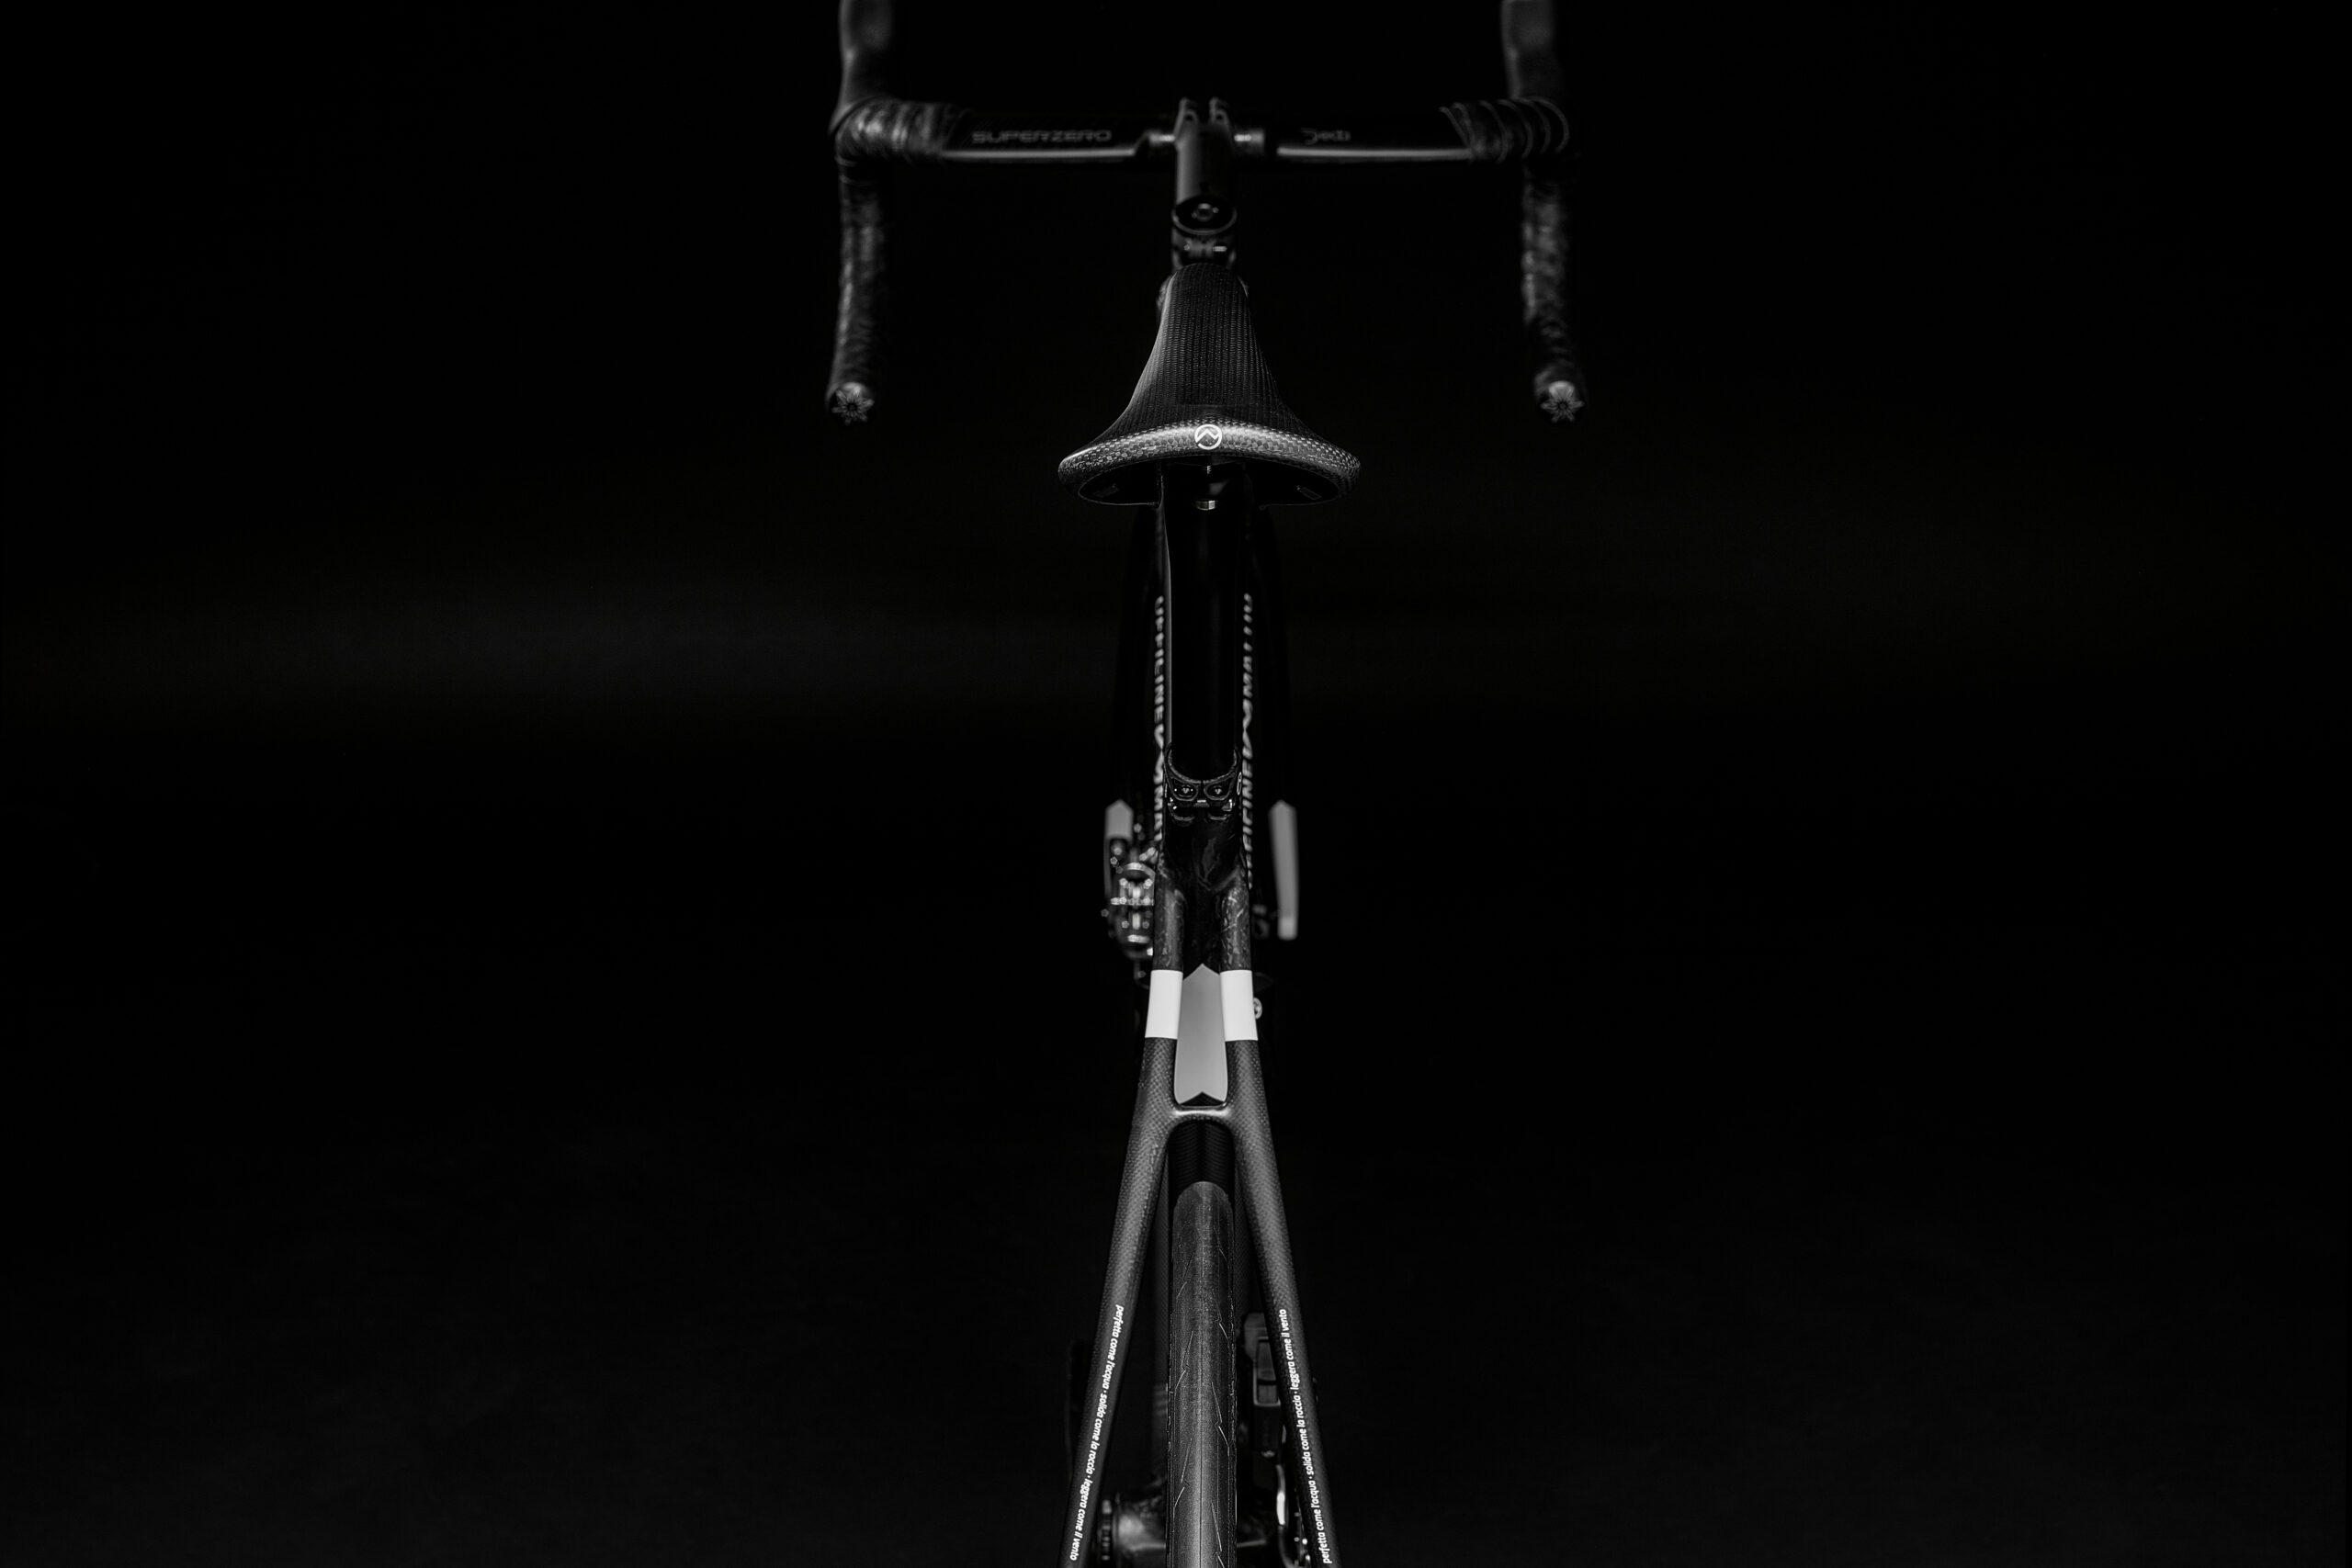 Bicicletta Officine Mattio modello SL DISC, produzione made in italy in fibra di carbonio, fotografia dettaglio sella